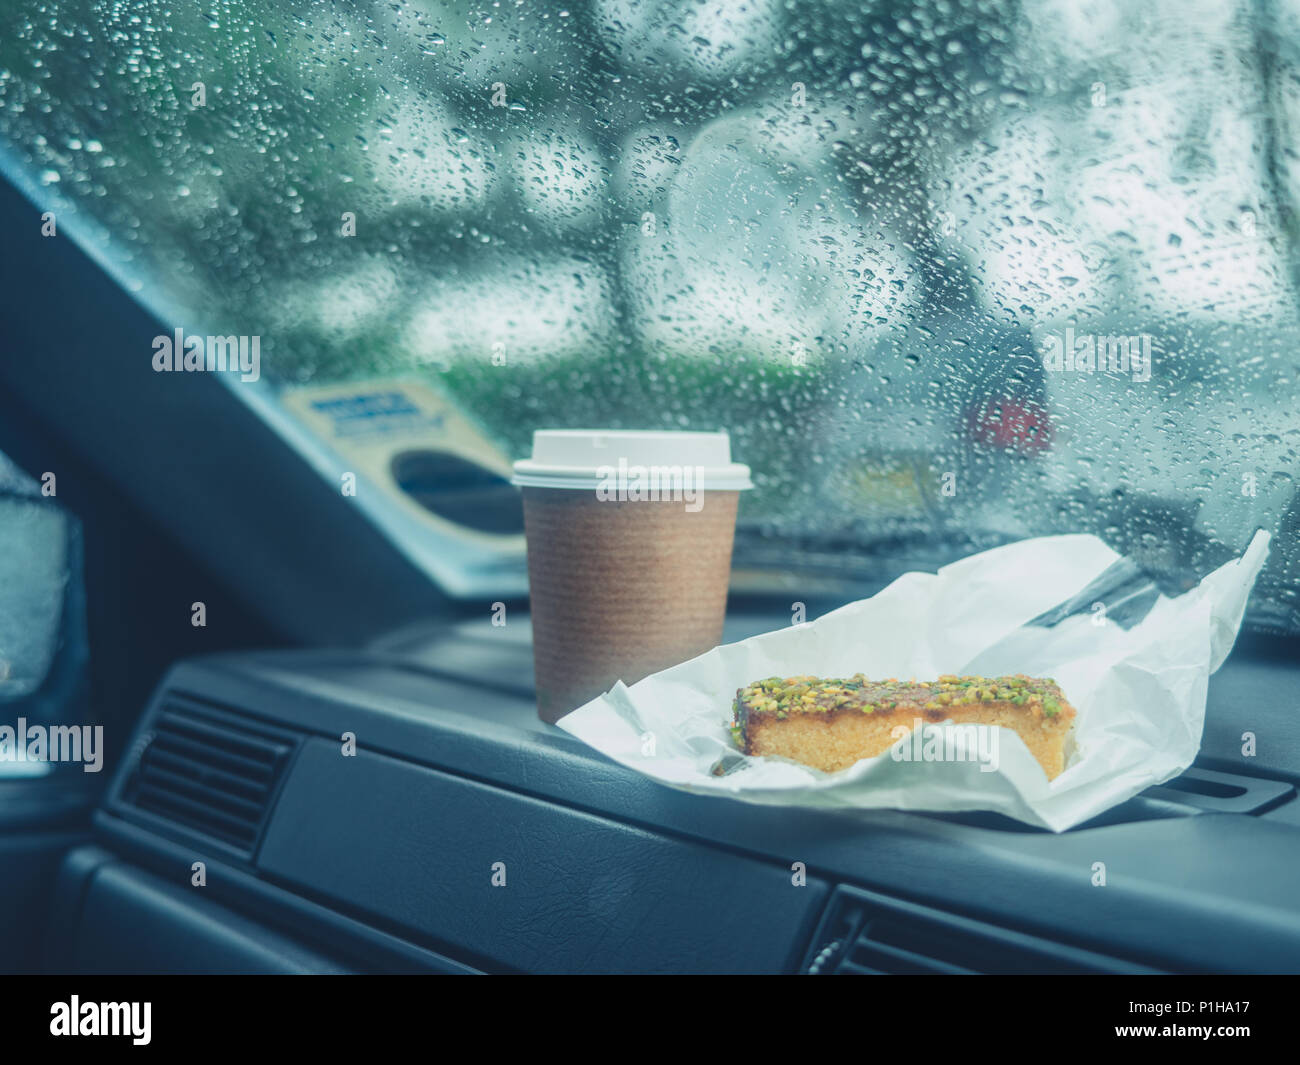 Un tasse de café et une tranche de gâteau sur le bord d'une voiture un jour de pluie Banque D'Images